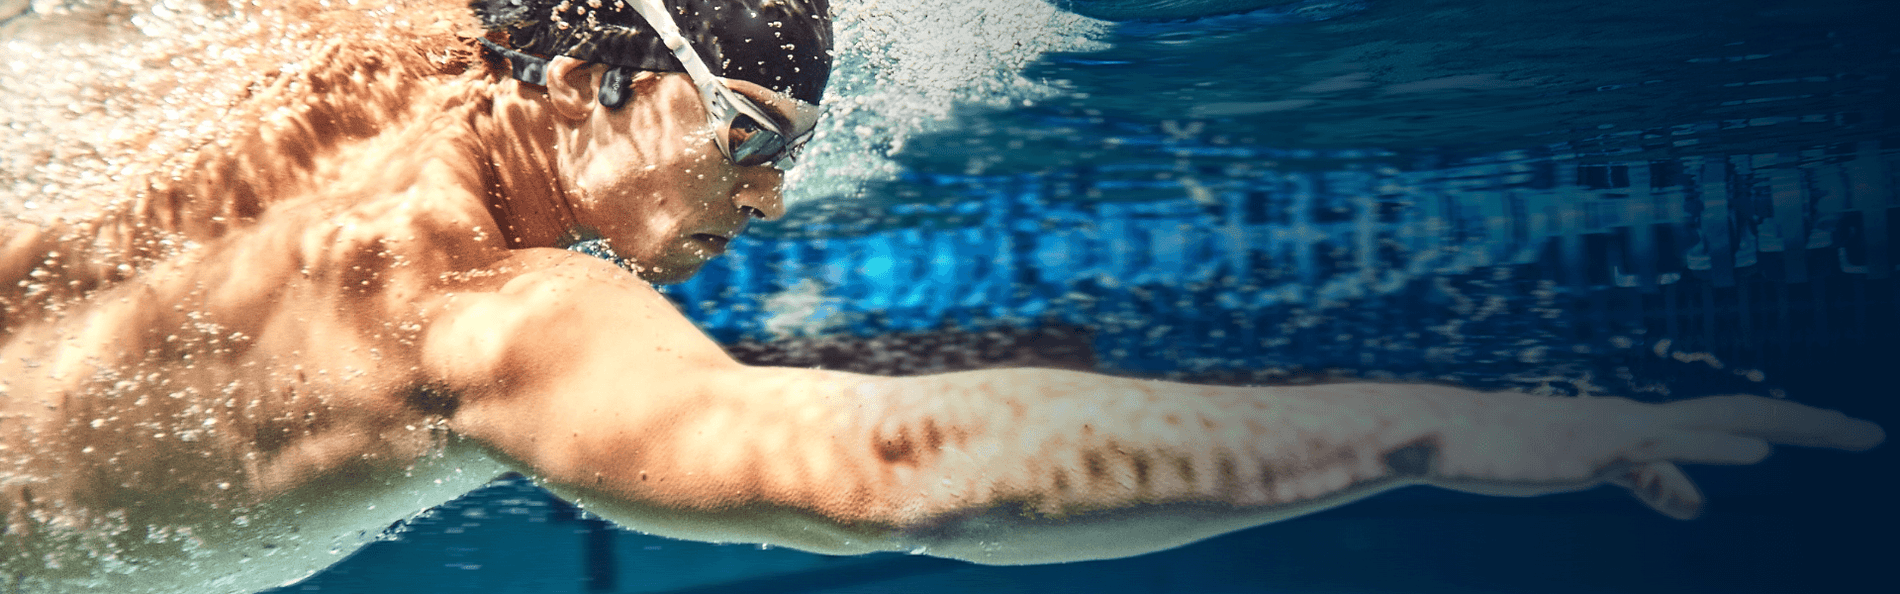 Diseñado para nadadores Diseñado para soportar todos los elementos.  OpenSwim es totalmente resistente al agua y sumergible para que puedas nadar, correr, andar en bicicleta o entrenar más duro que nunca.